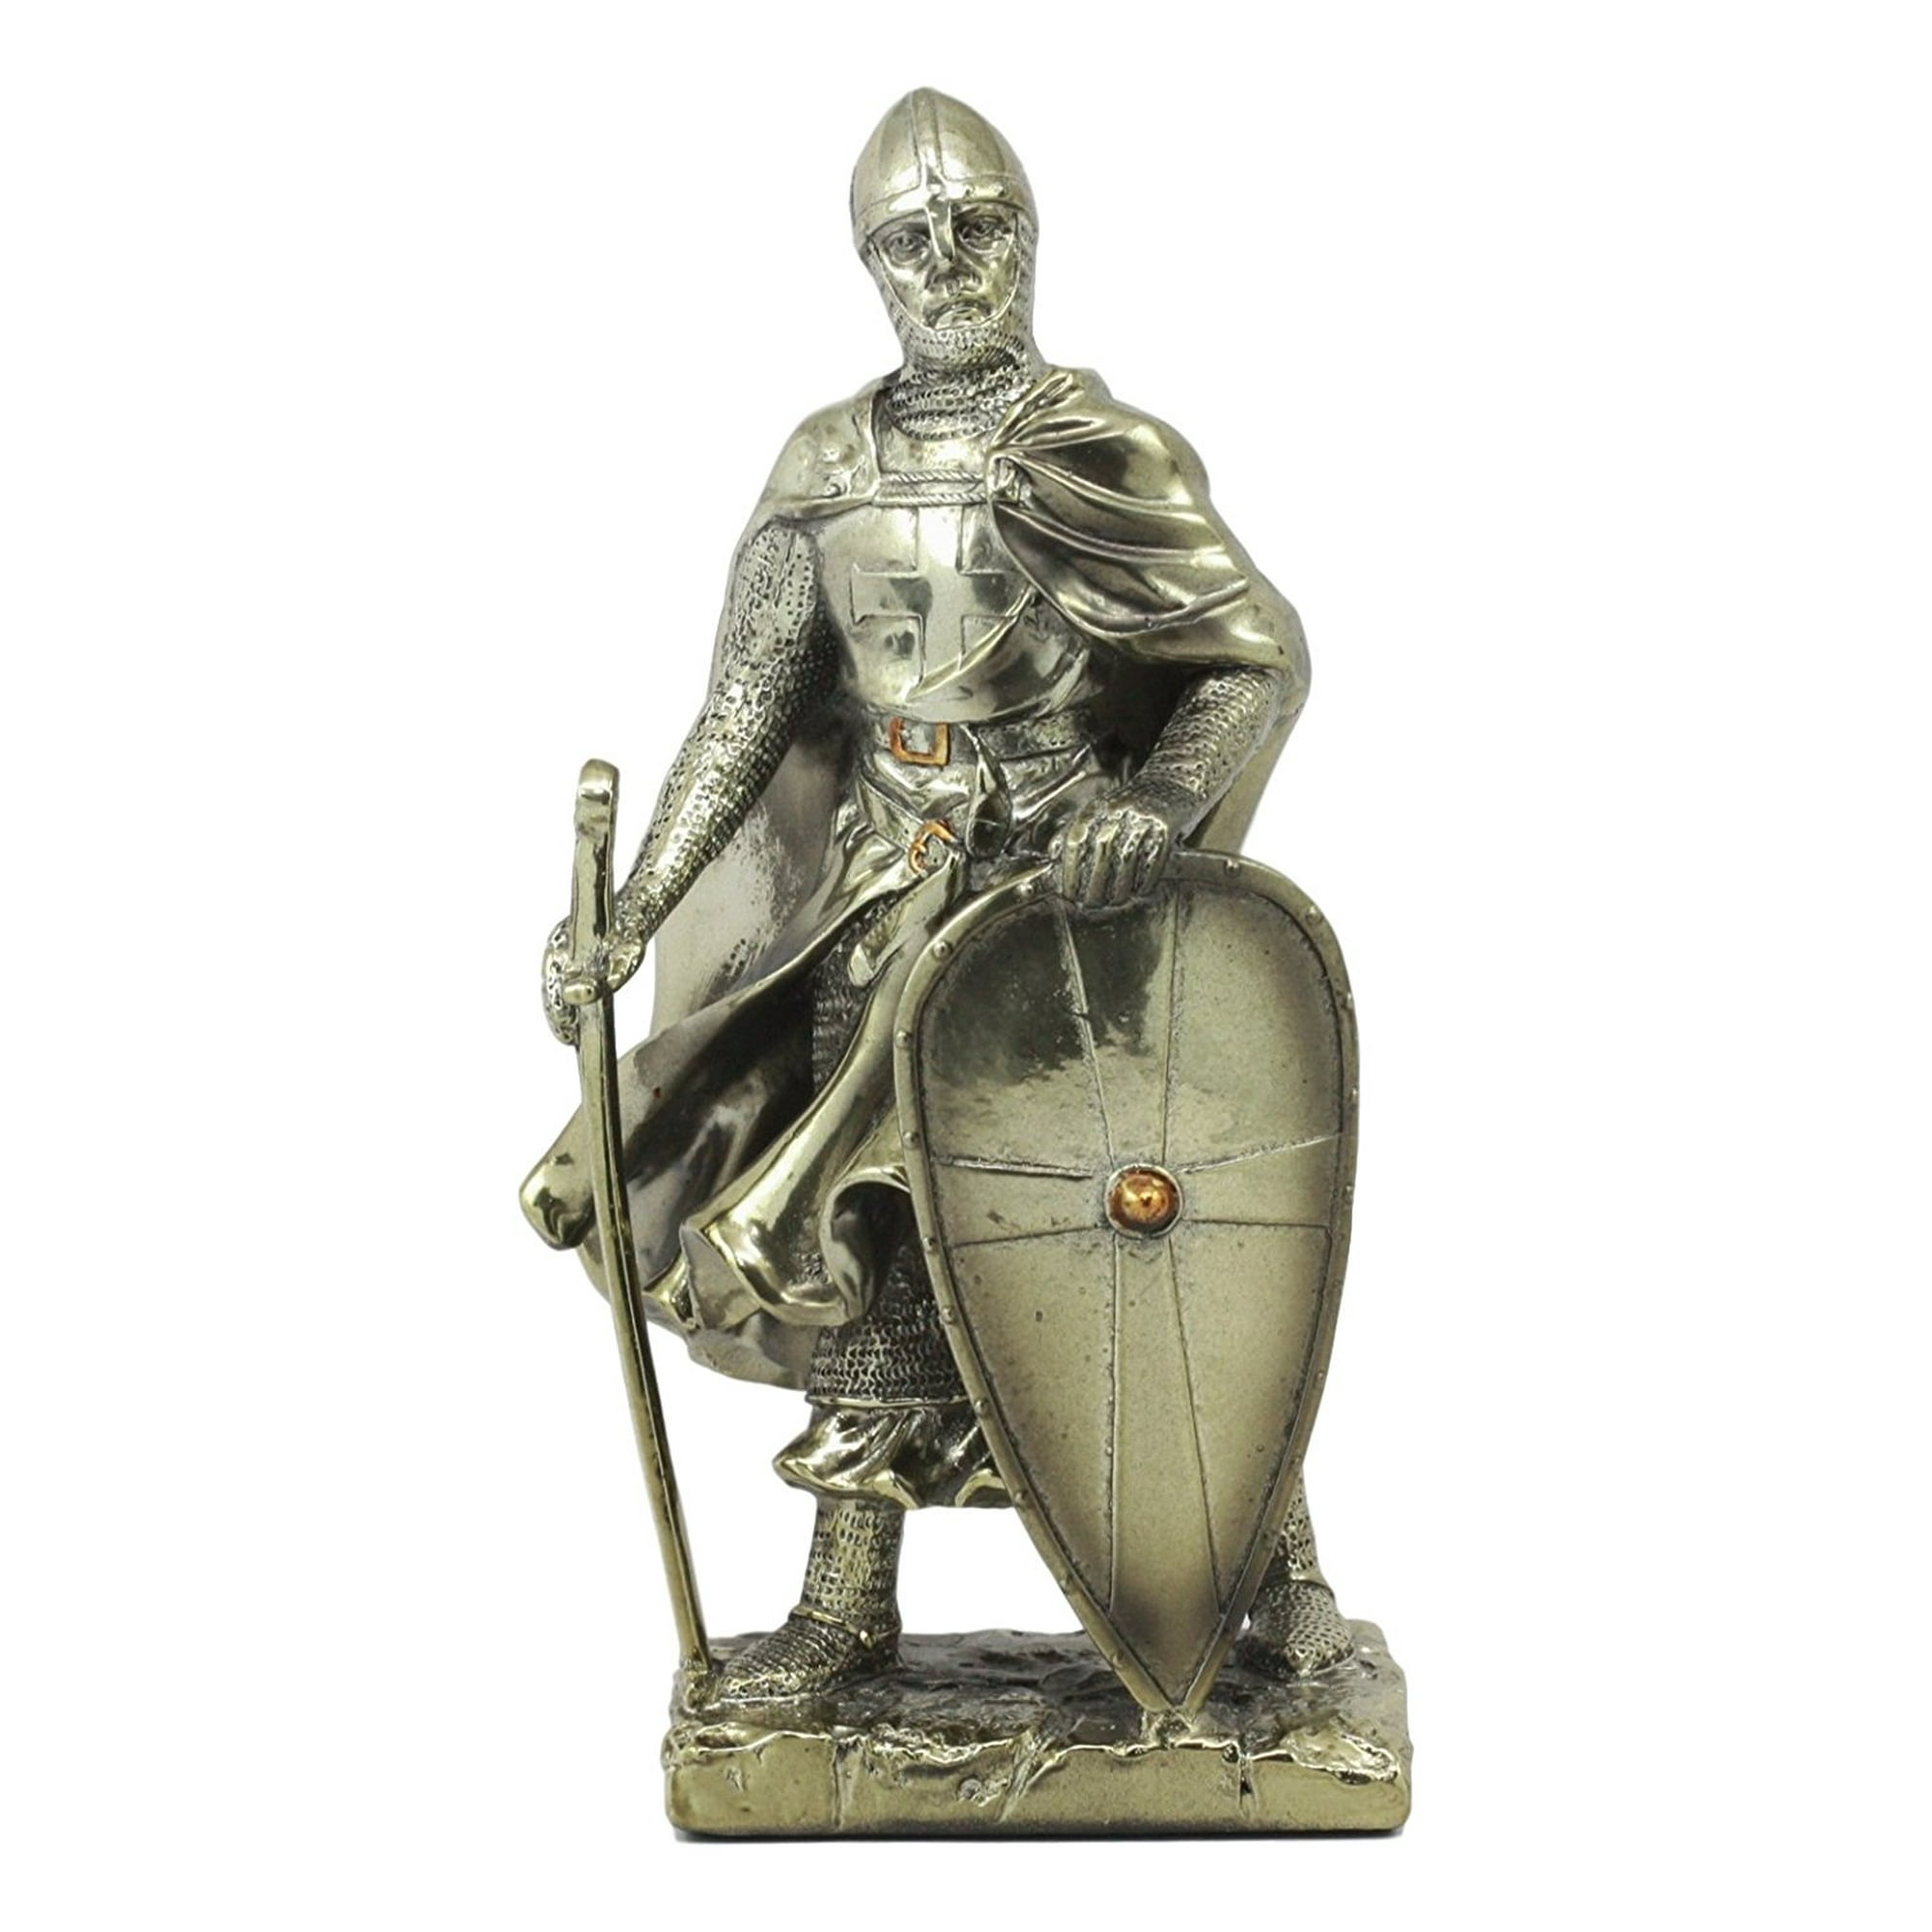 holy roman empire knight